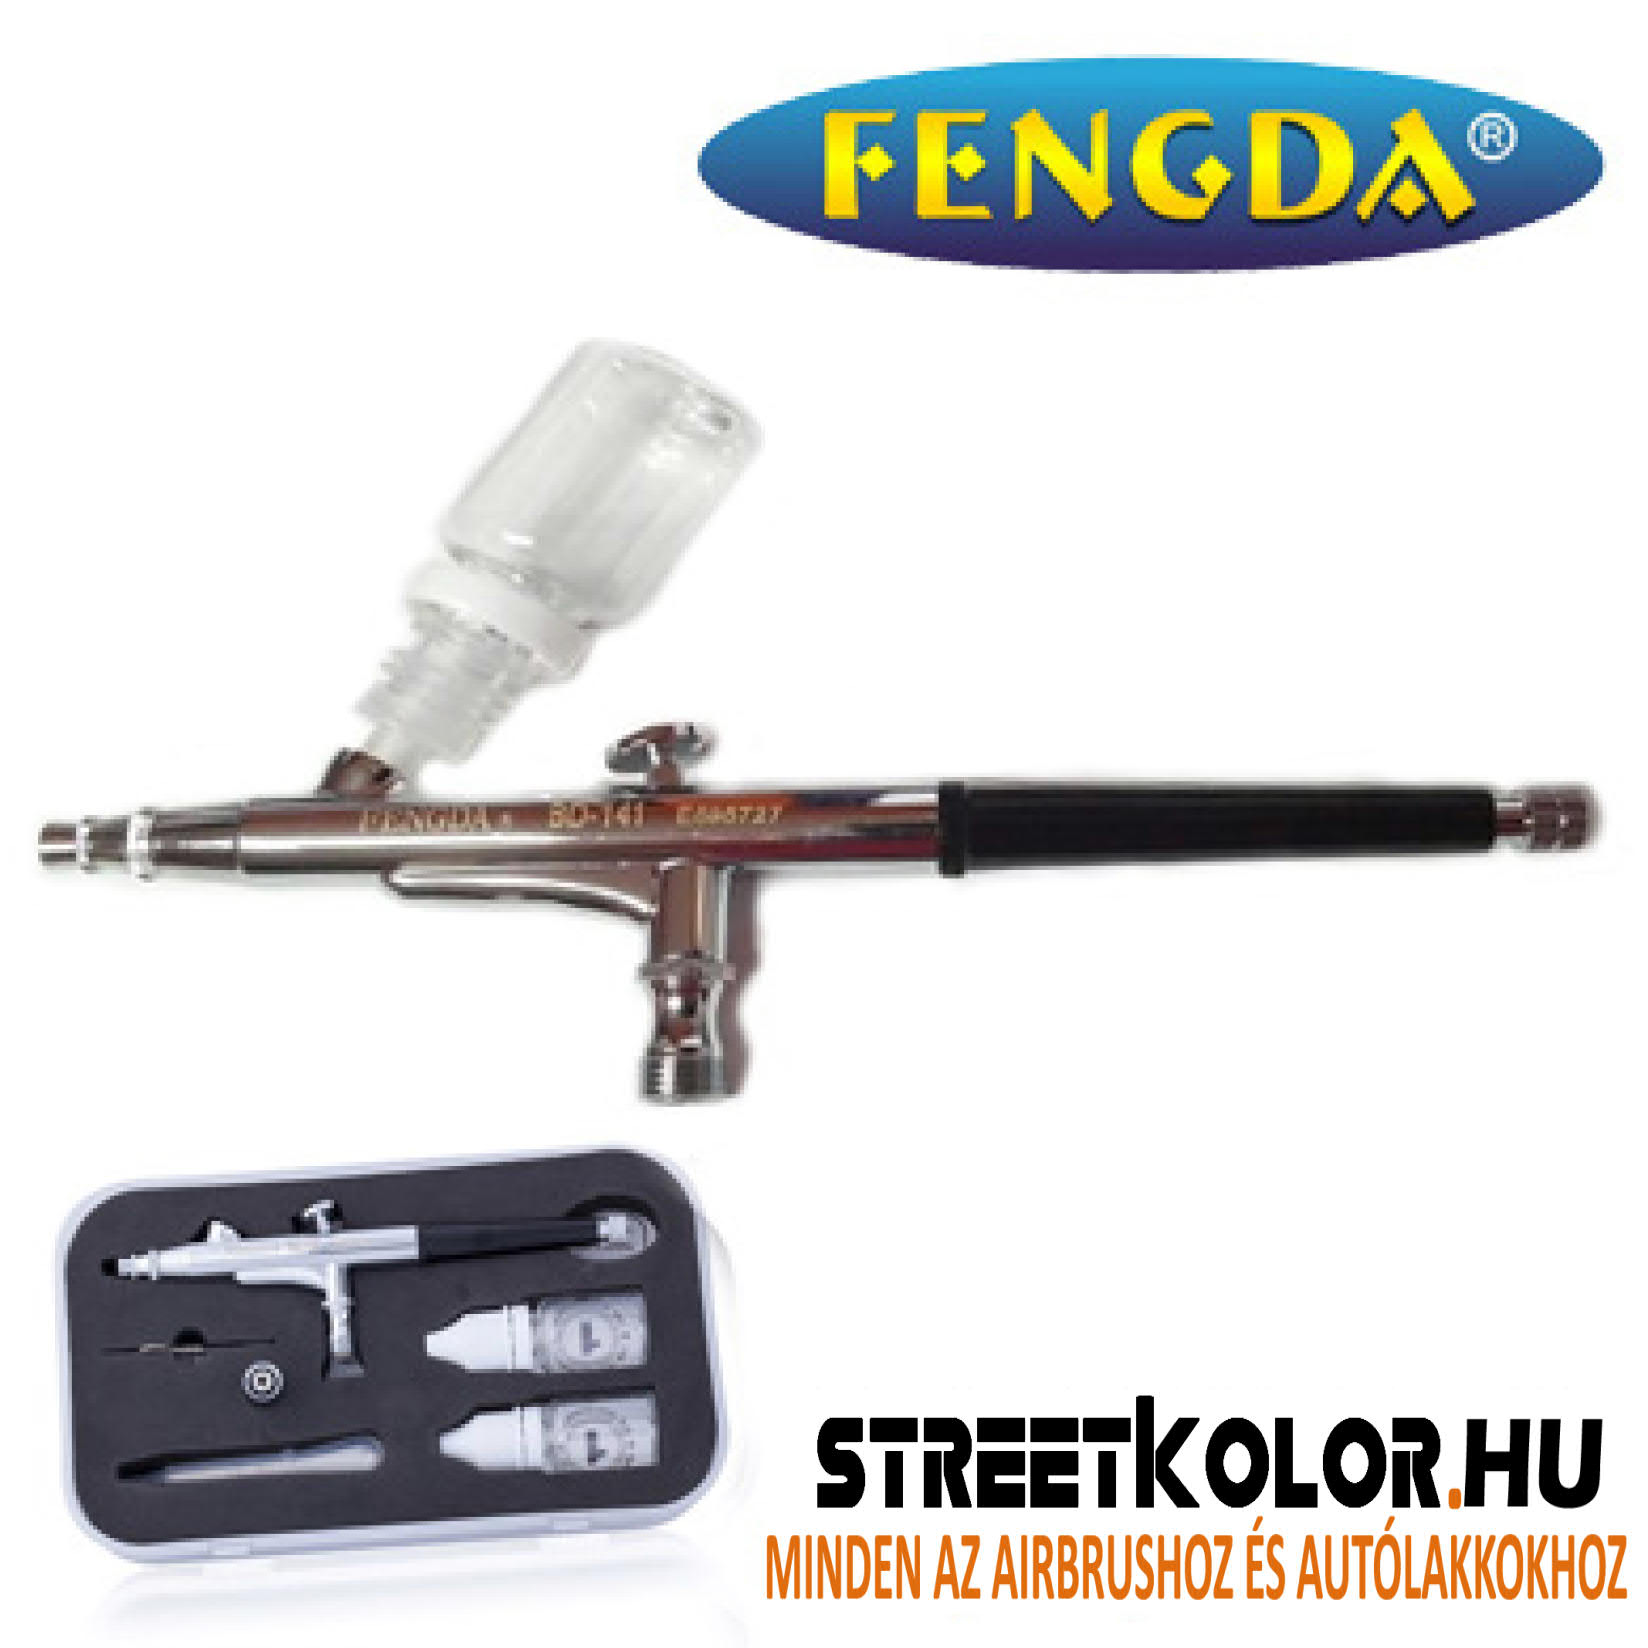 FENGDA® BD-141 airbrush pisztoly 0,3 mm csúsztatható flakonokkal